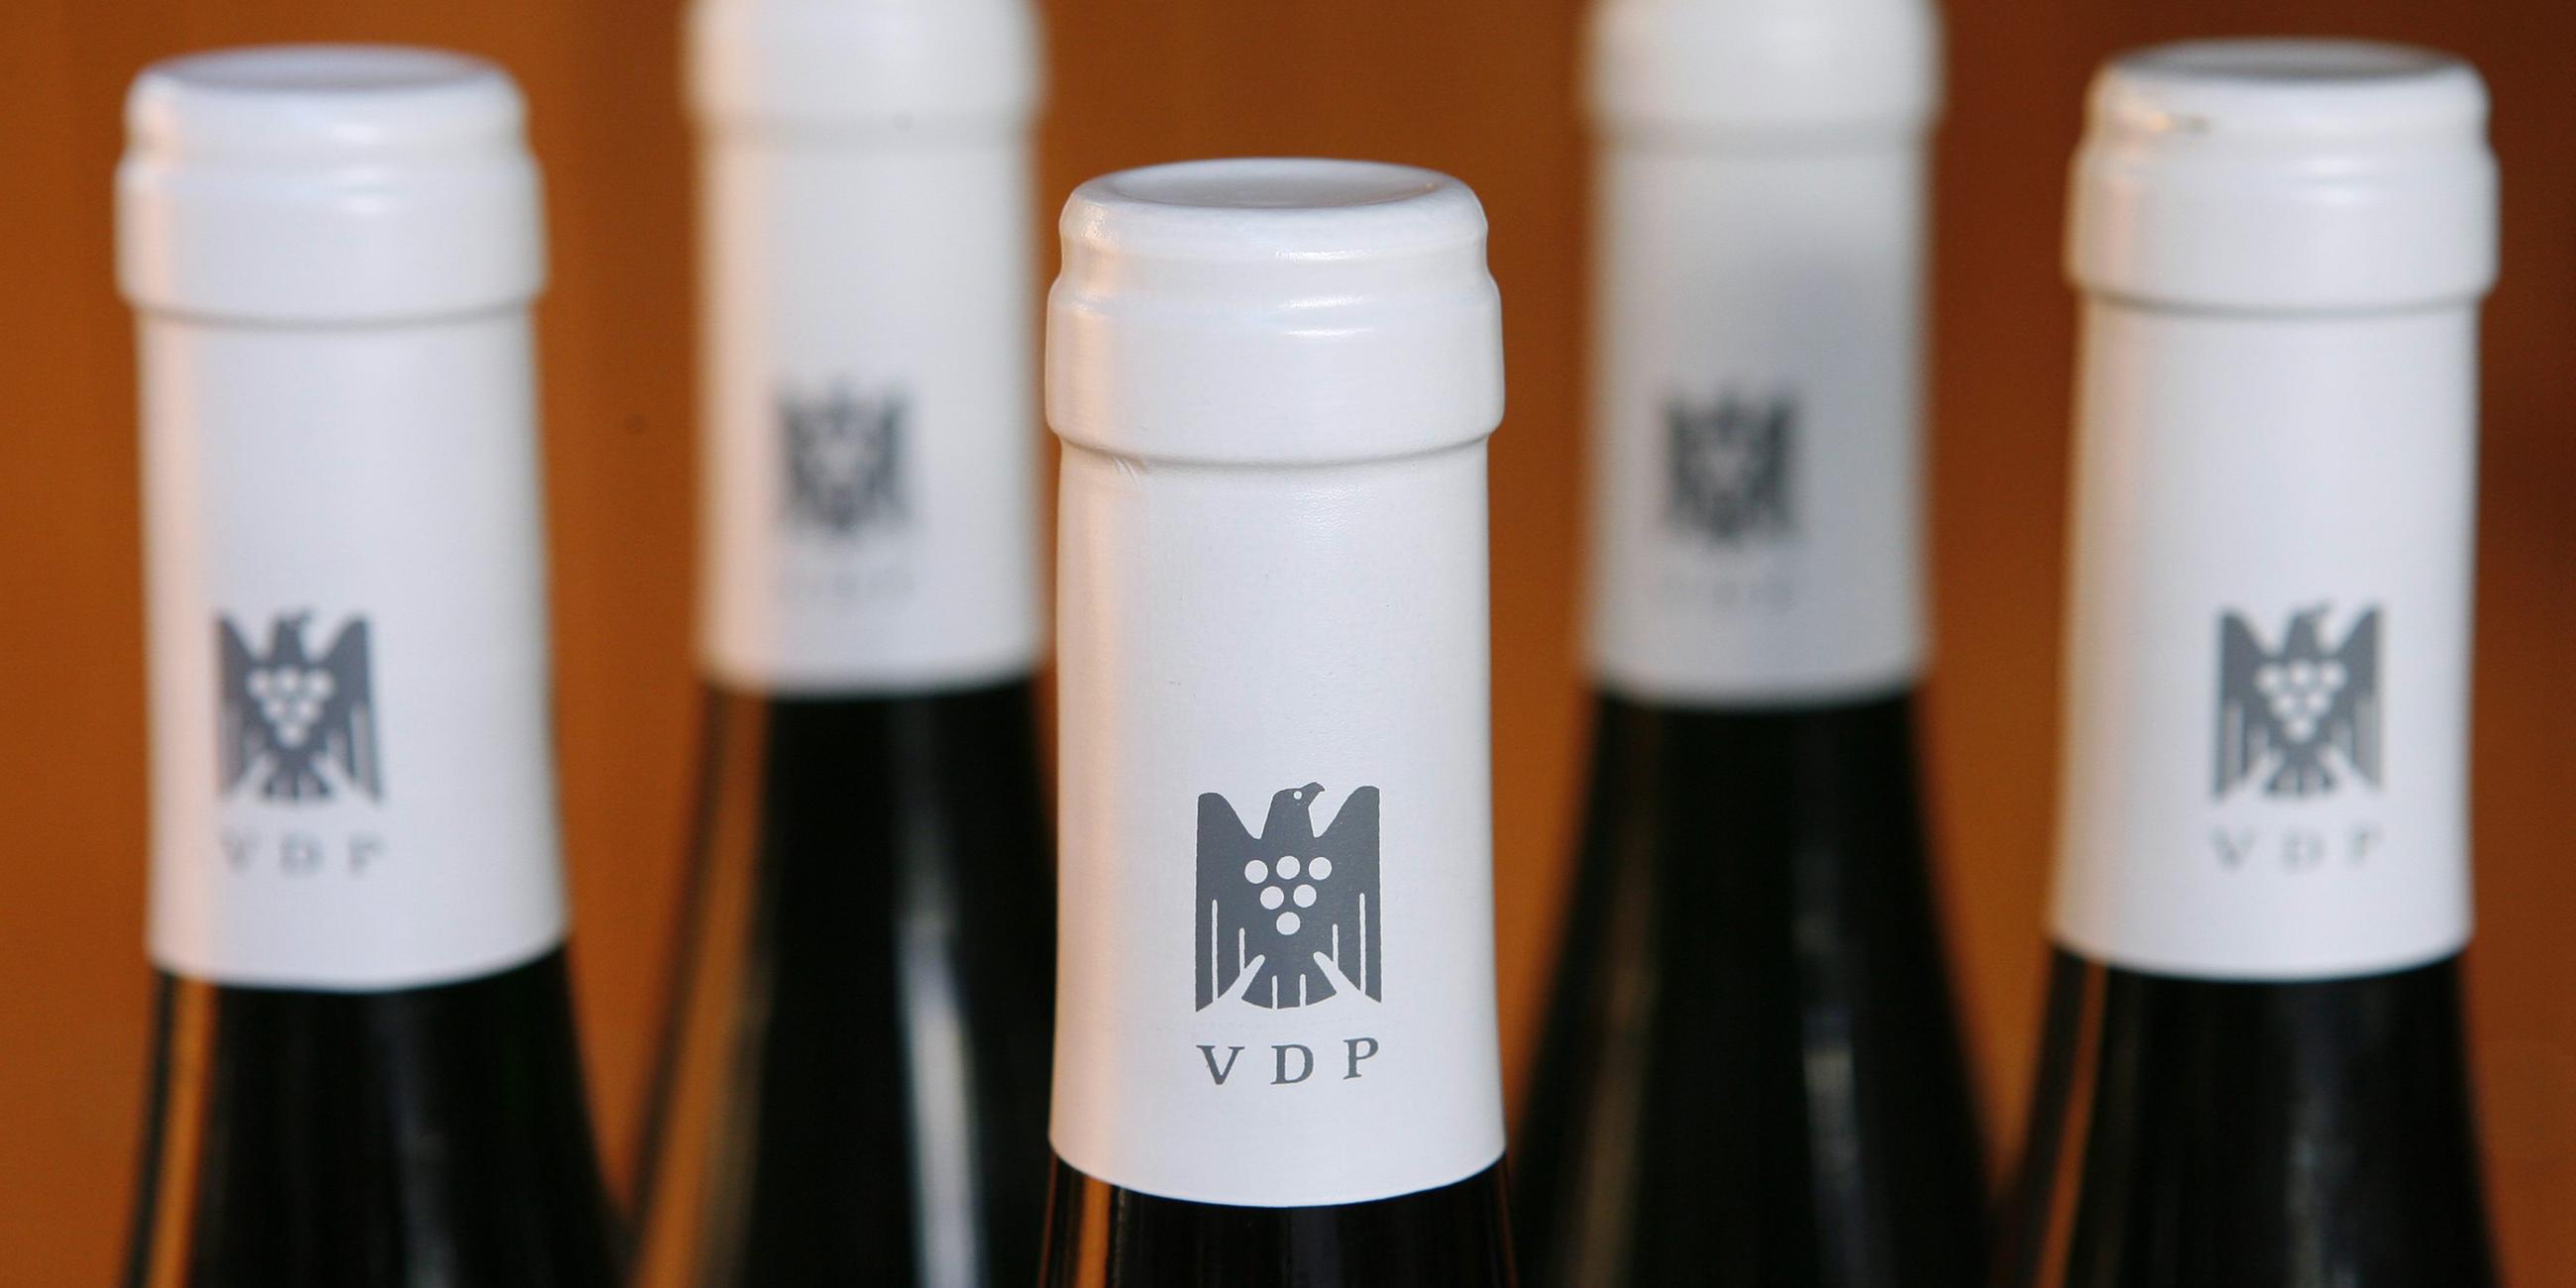 Das Emblem des Verbands Deutscher Prädikatsweingüter ist auf den Kapseln von Weinflaschen aufgedruckt, aufgenommen am 23.10.2007